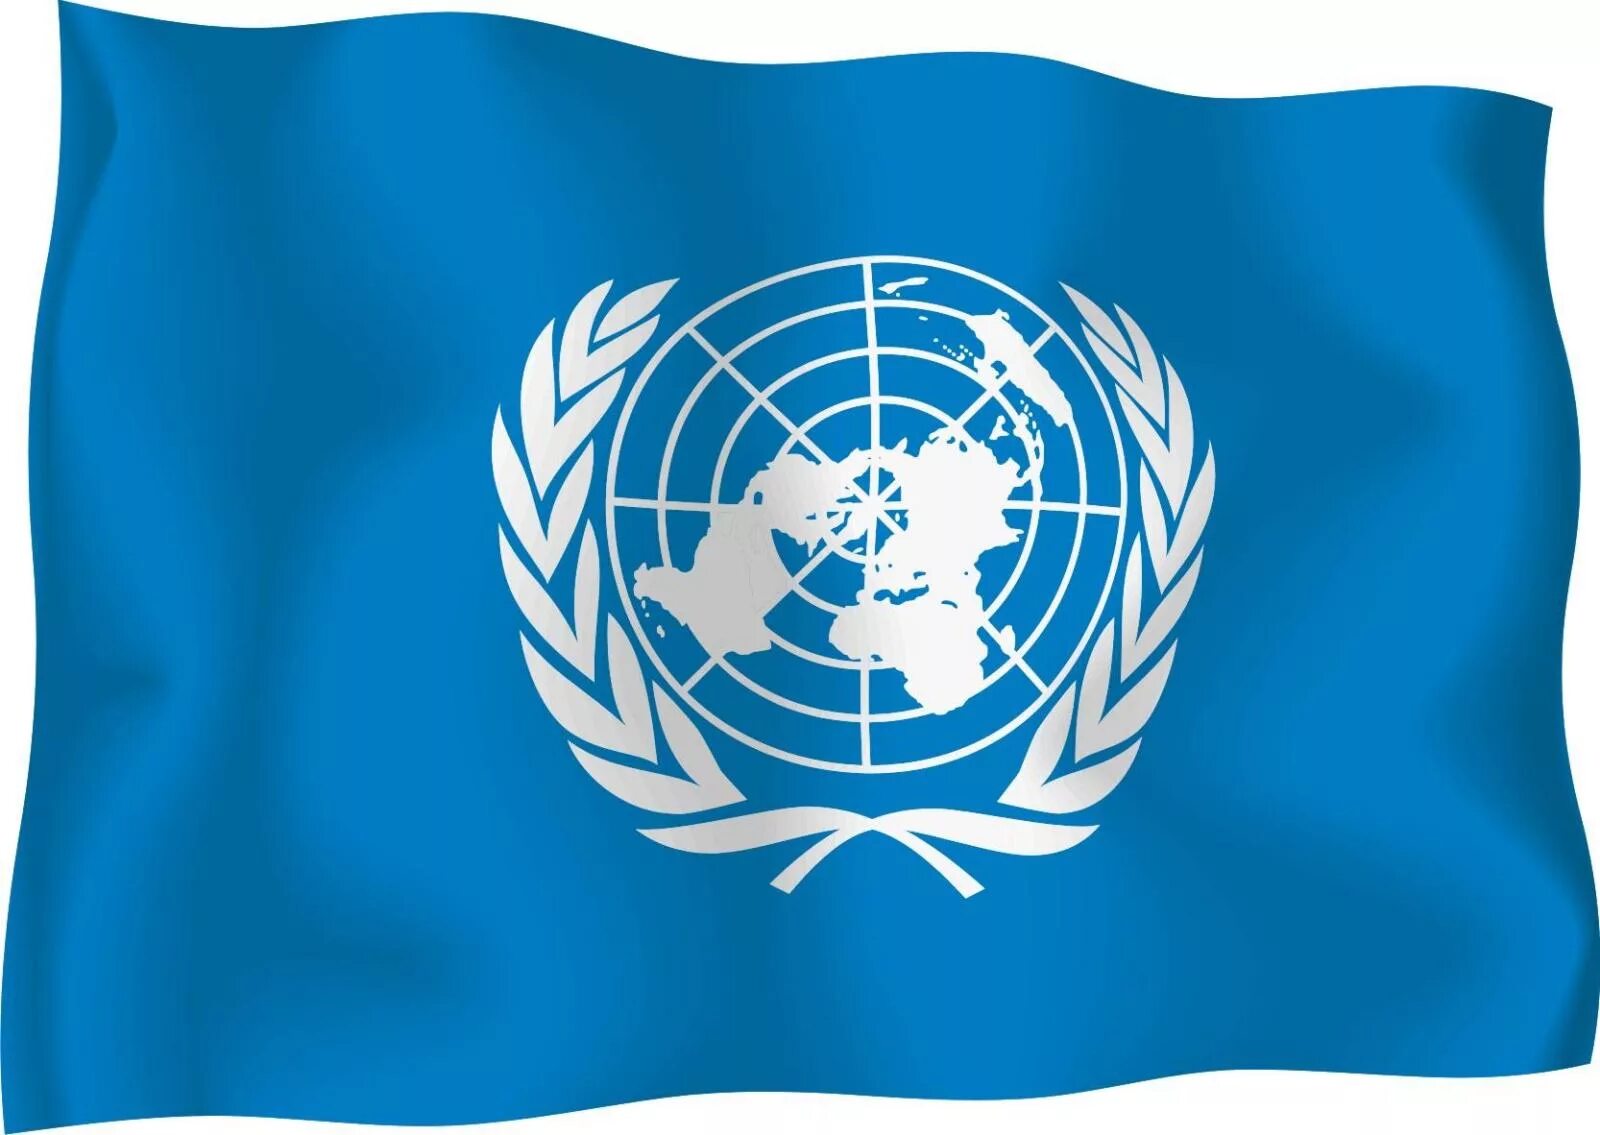 70 оон. Организация Объединенных наций ООН флаг. Флаг флаг организации Объединенных наций. Флаг ООН флаг ООН. Международные организации ООН.